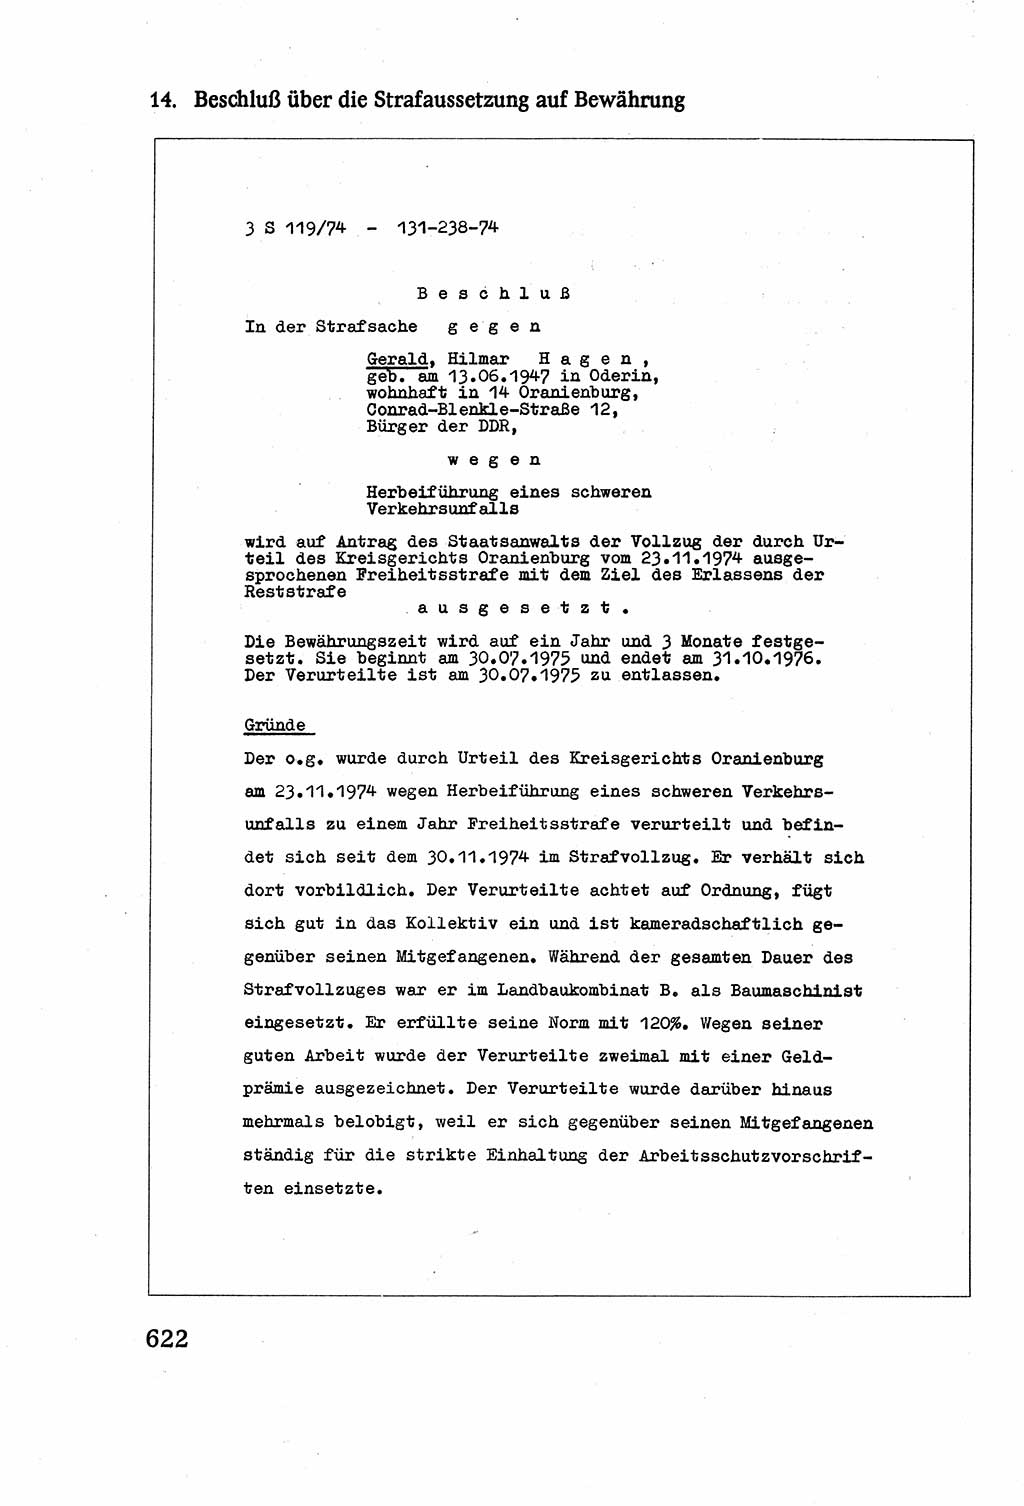 Strafverfahrensrecht [Deutsche Demokratische Republik (DDR)], Lehrbuch 1977, Seite 622 (Strafverf.-R. DDR Lb. 1977, S. 622)